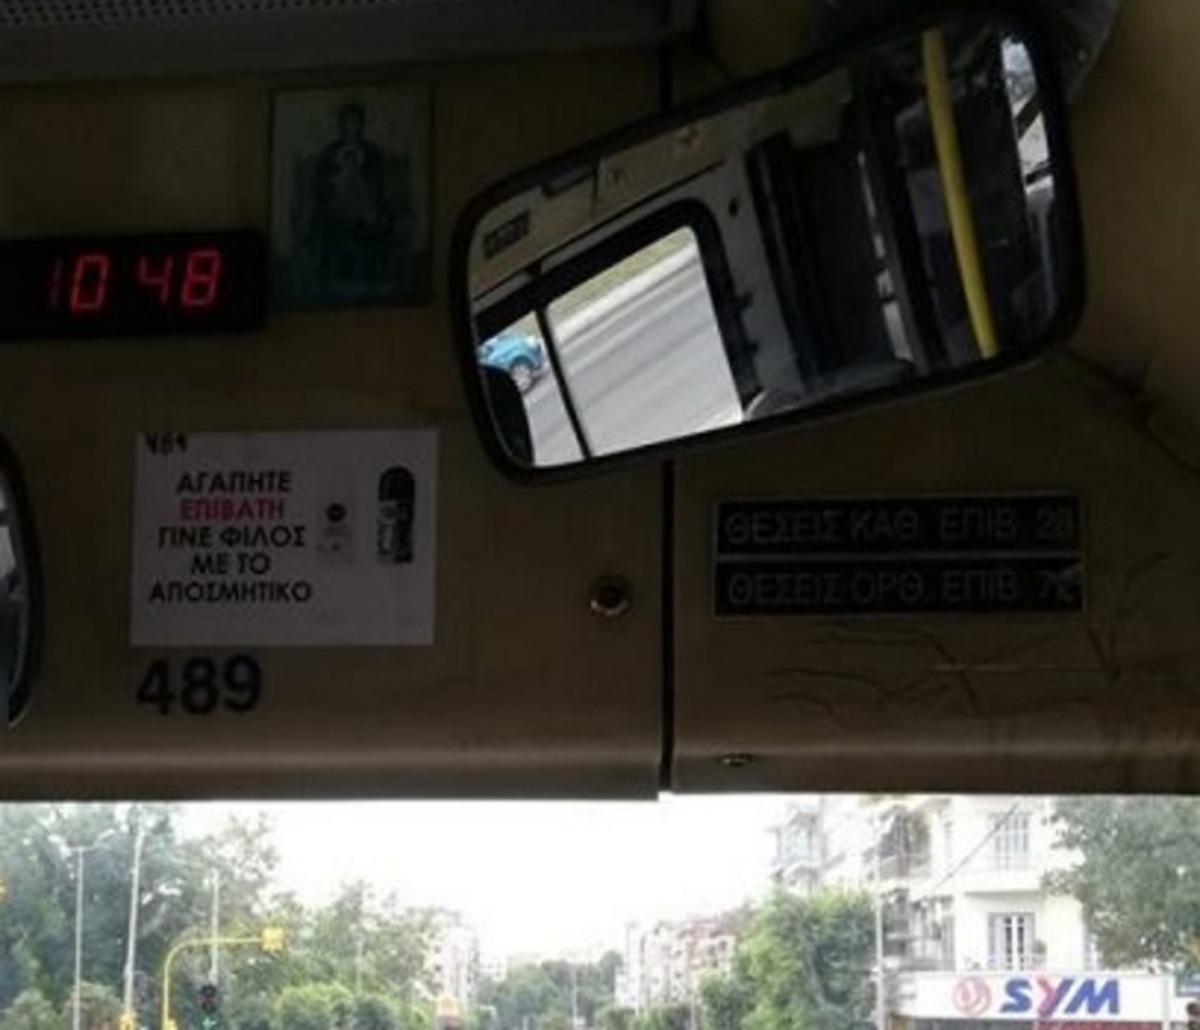 Θεσσαλονίκη: Ο οδηγός του λεωφορείου κάνει έκκληση και “ρίχνει” το διαδίκτυο – Οι επίμαχες εικόνες [pics, video]